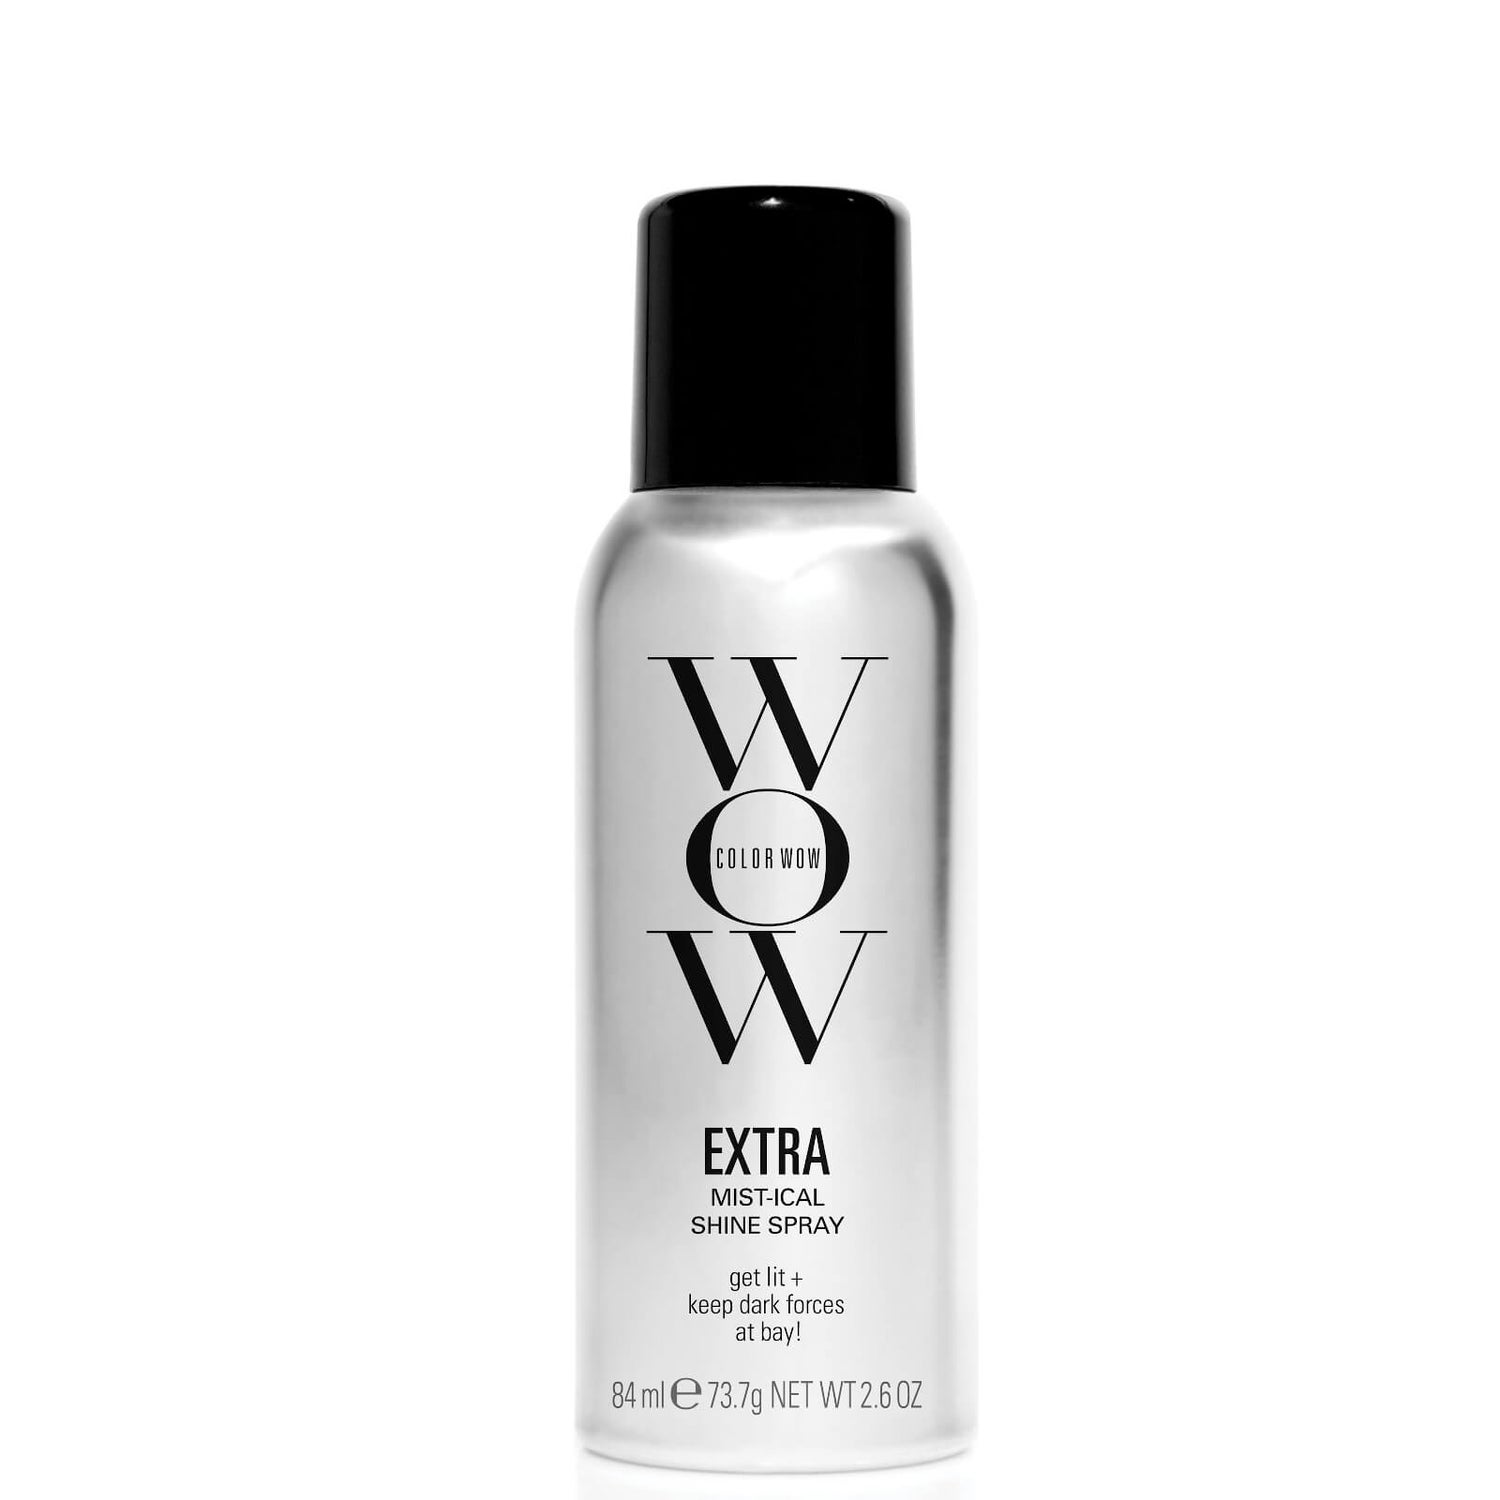 Спрей для укладки и сияния волос Color WOW EXTRA Mist-ical Shine Spray, дорожный формат, 84 мл